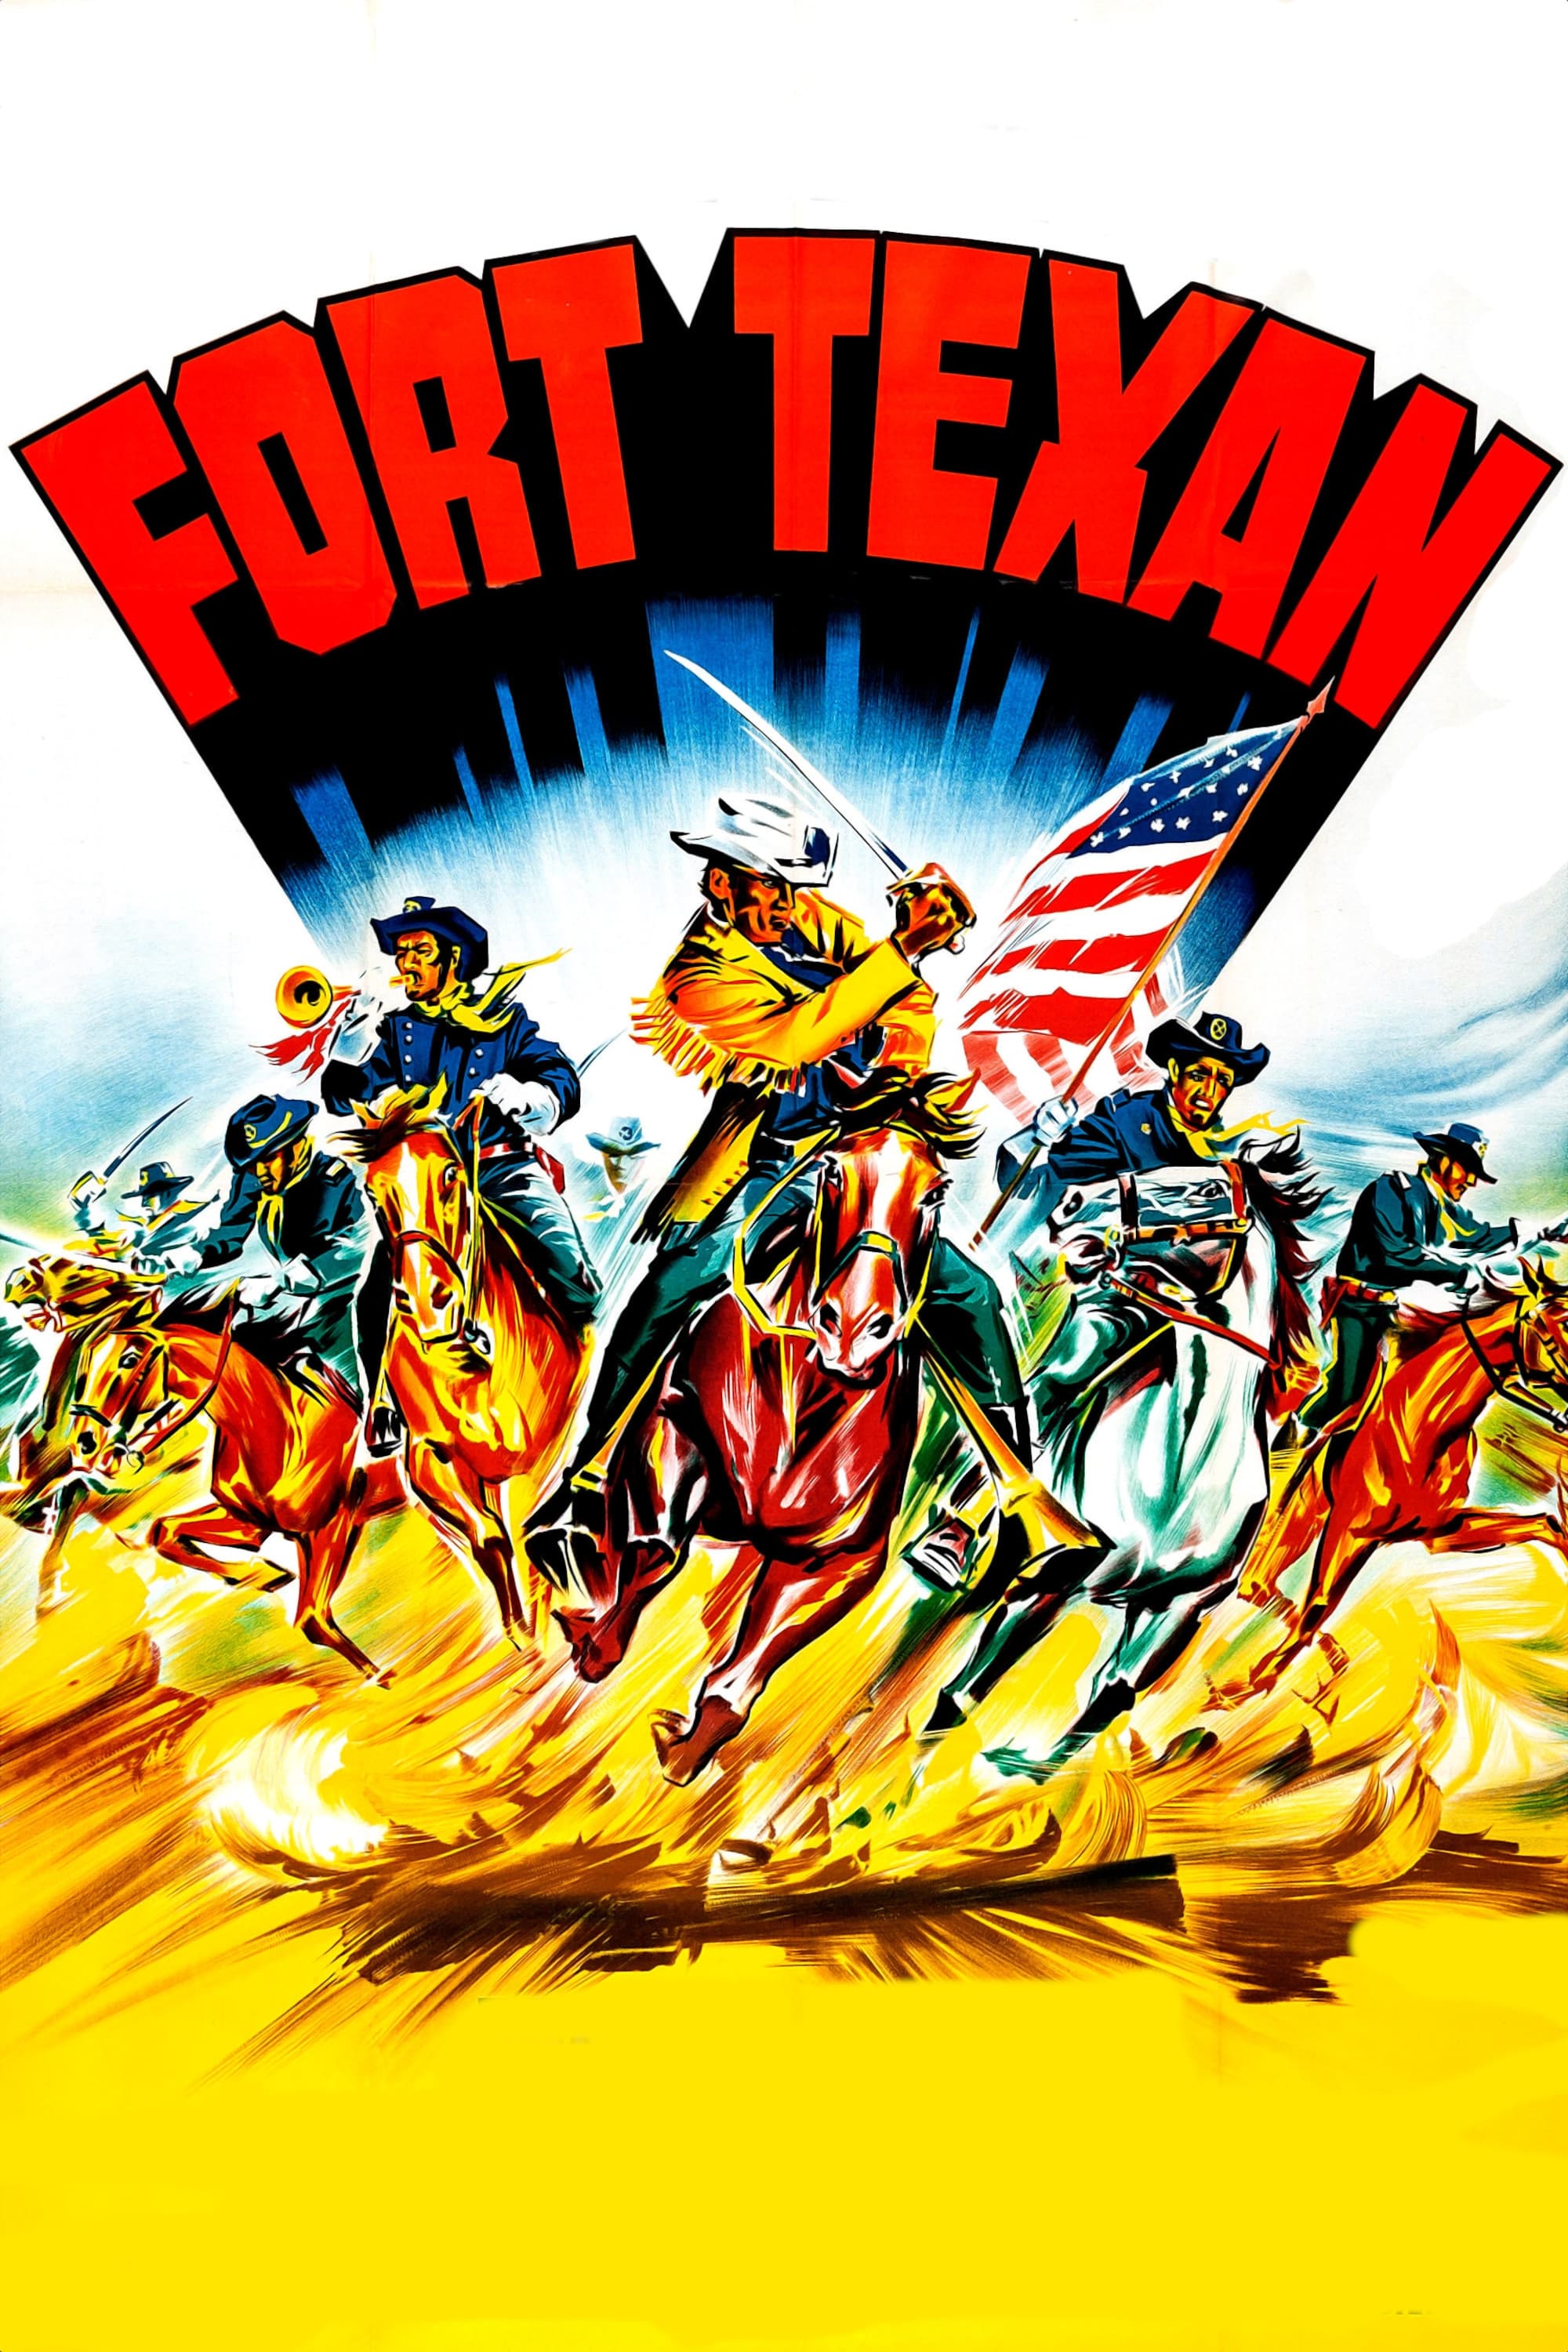 Assault on Fort Texan (1965)